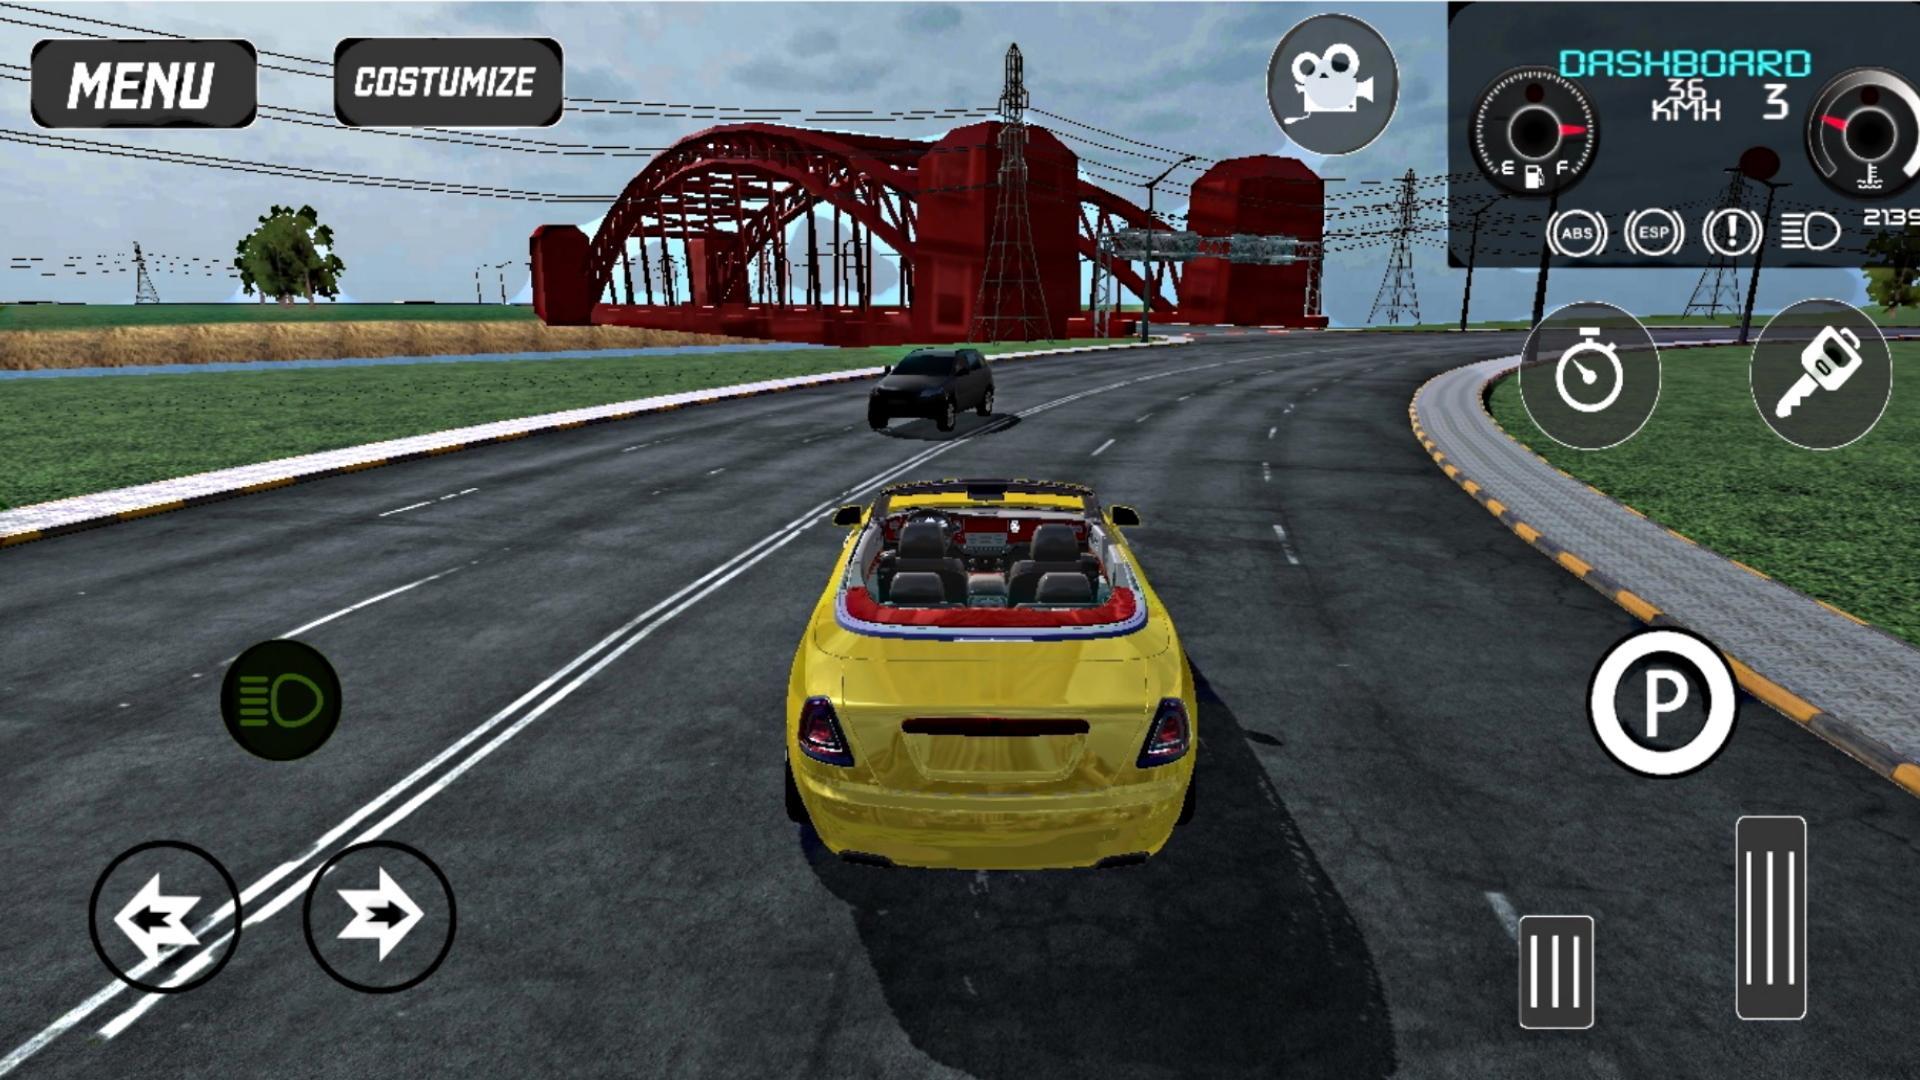 Download Game Car Simulator 2 Mod Apk Android 1  Car Simulator 2 For